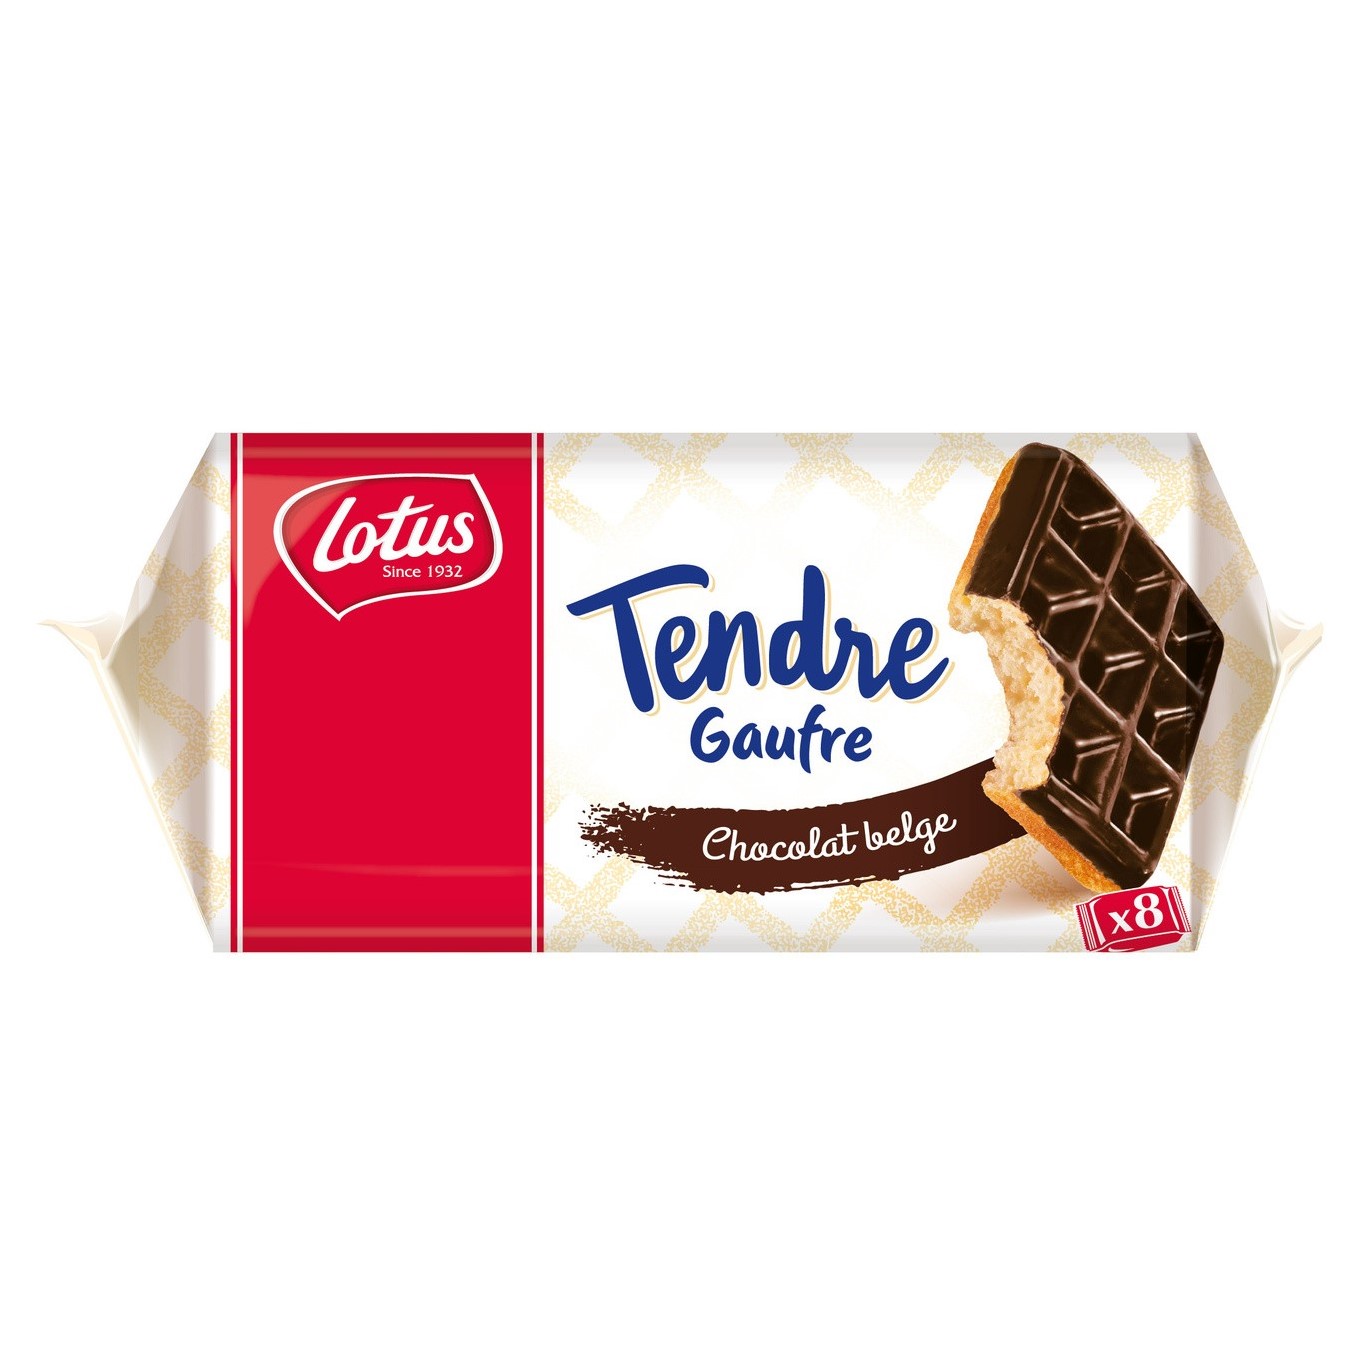 Tendre Gaufre au Chocolat Belge